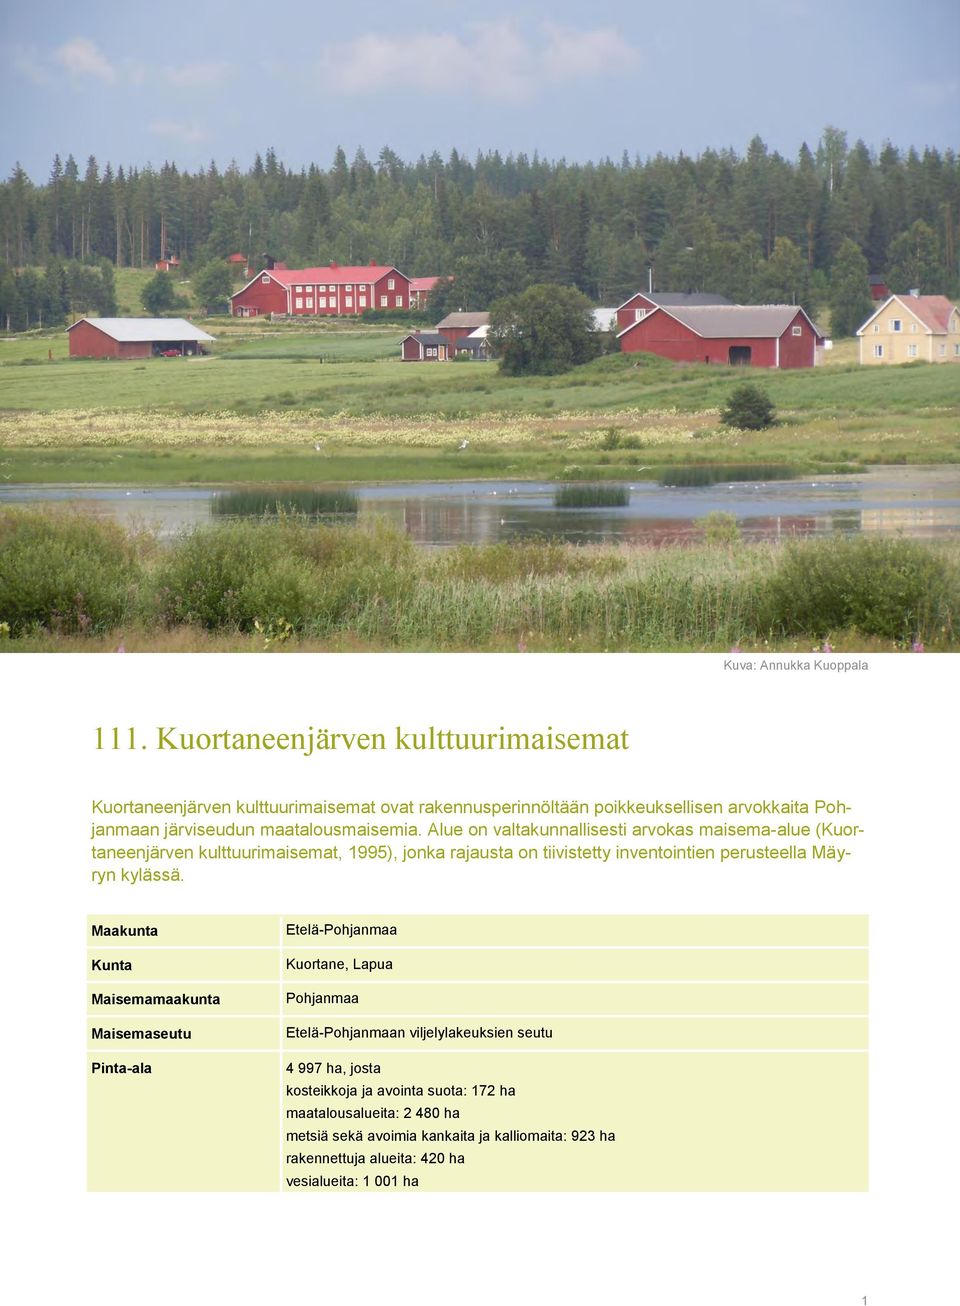 Alue on valtakunnallisesti arvokas maisema-alue (Kuortaneenjärven kulttuurimaisemat, 1995), jonka rajausta on tiivistetty inventointien perusteella Mäyryn kylässä.